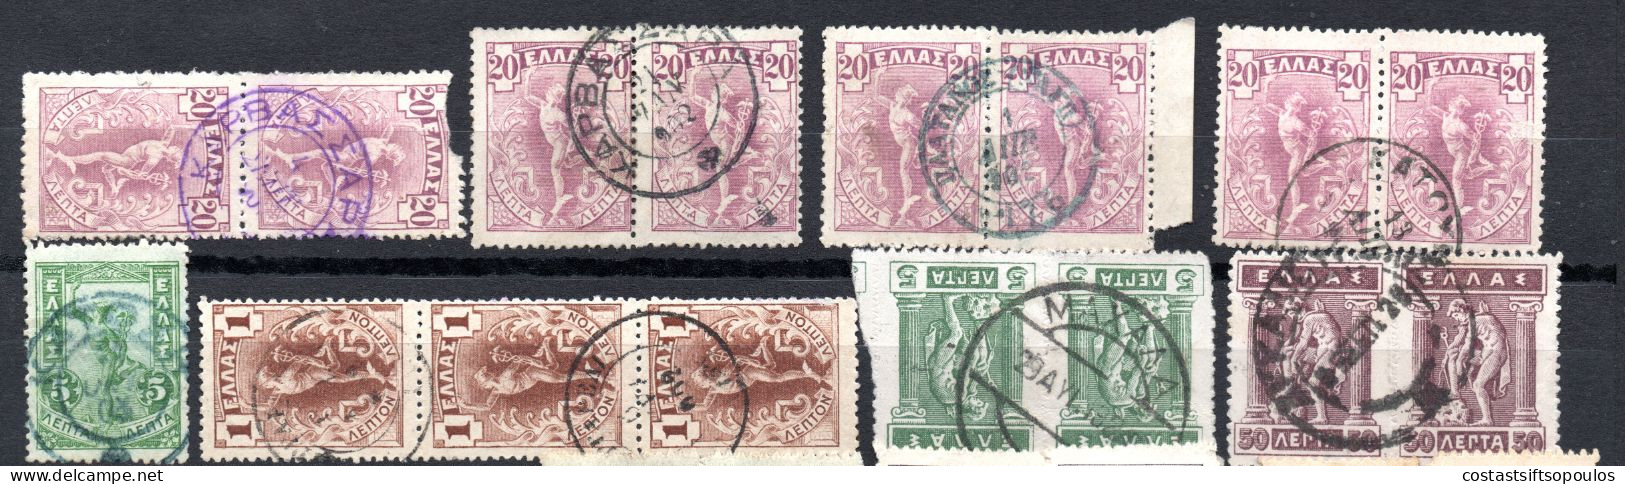 1792. GREECE.18 INTERESTING OLD POSTMARKS LOT, 3 SCANS - Postal Logo & Postmarks